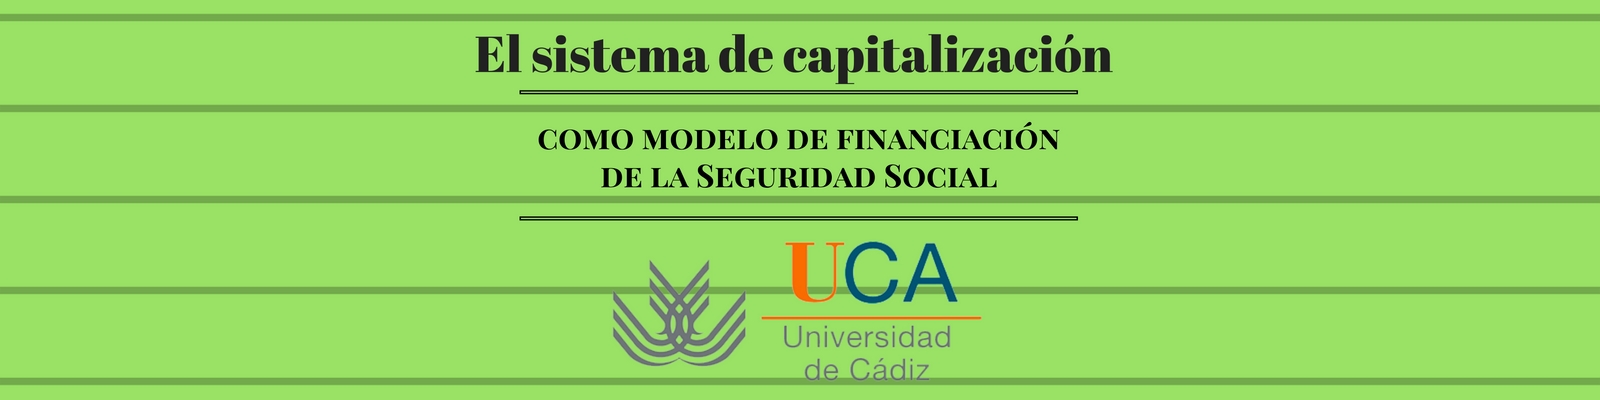 Conferencia sobre "El sistema de capitalización como modelo de financiación de la Seguridad Social"